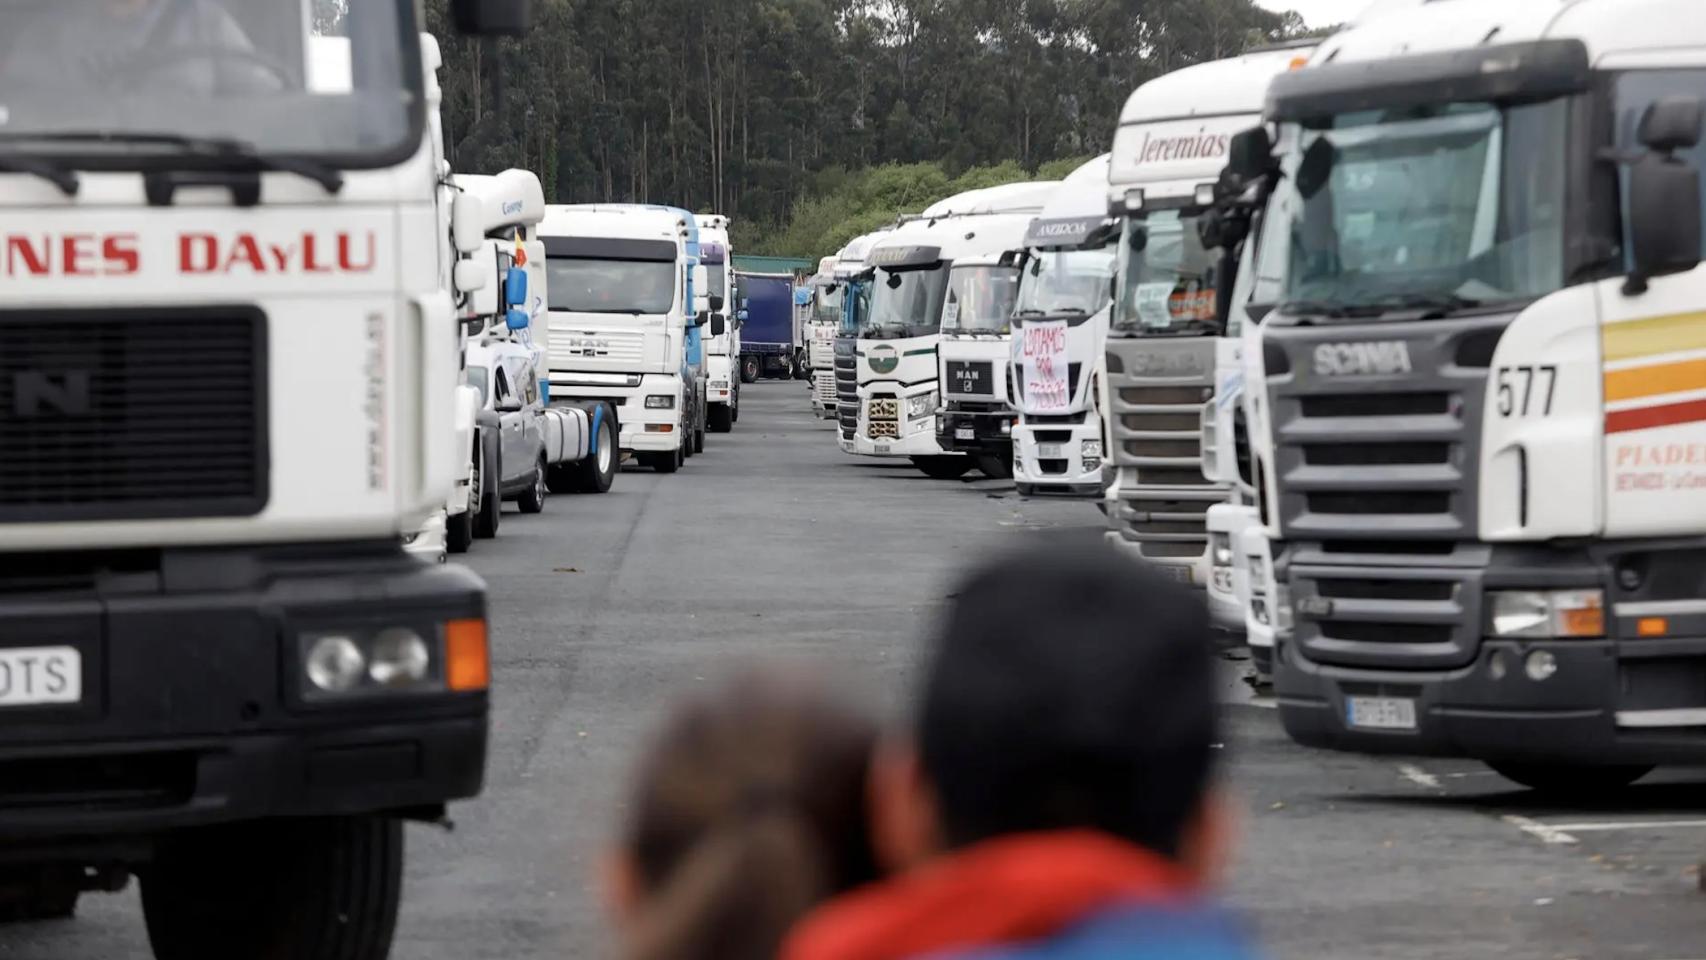 Camiones parados durante una huelga del sector del transporte, en una imagen de archivo.